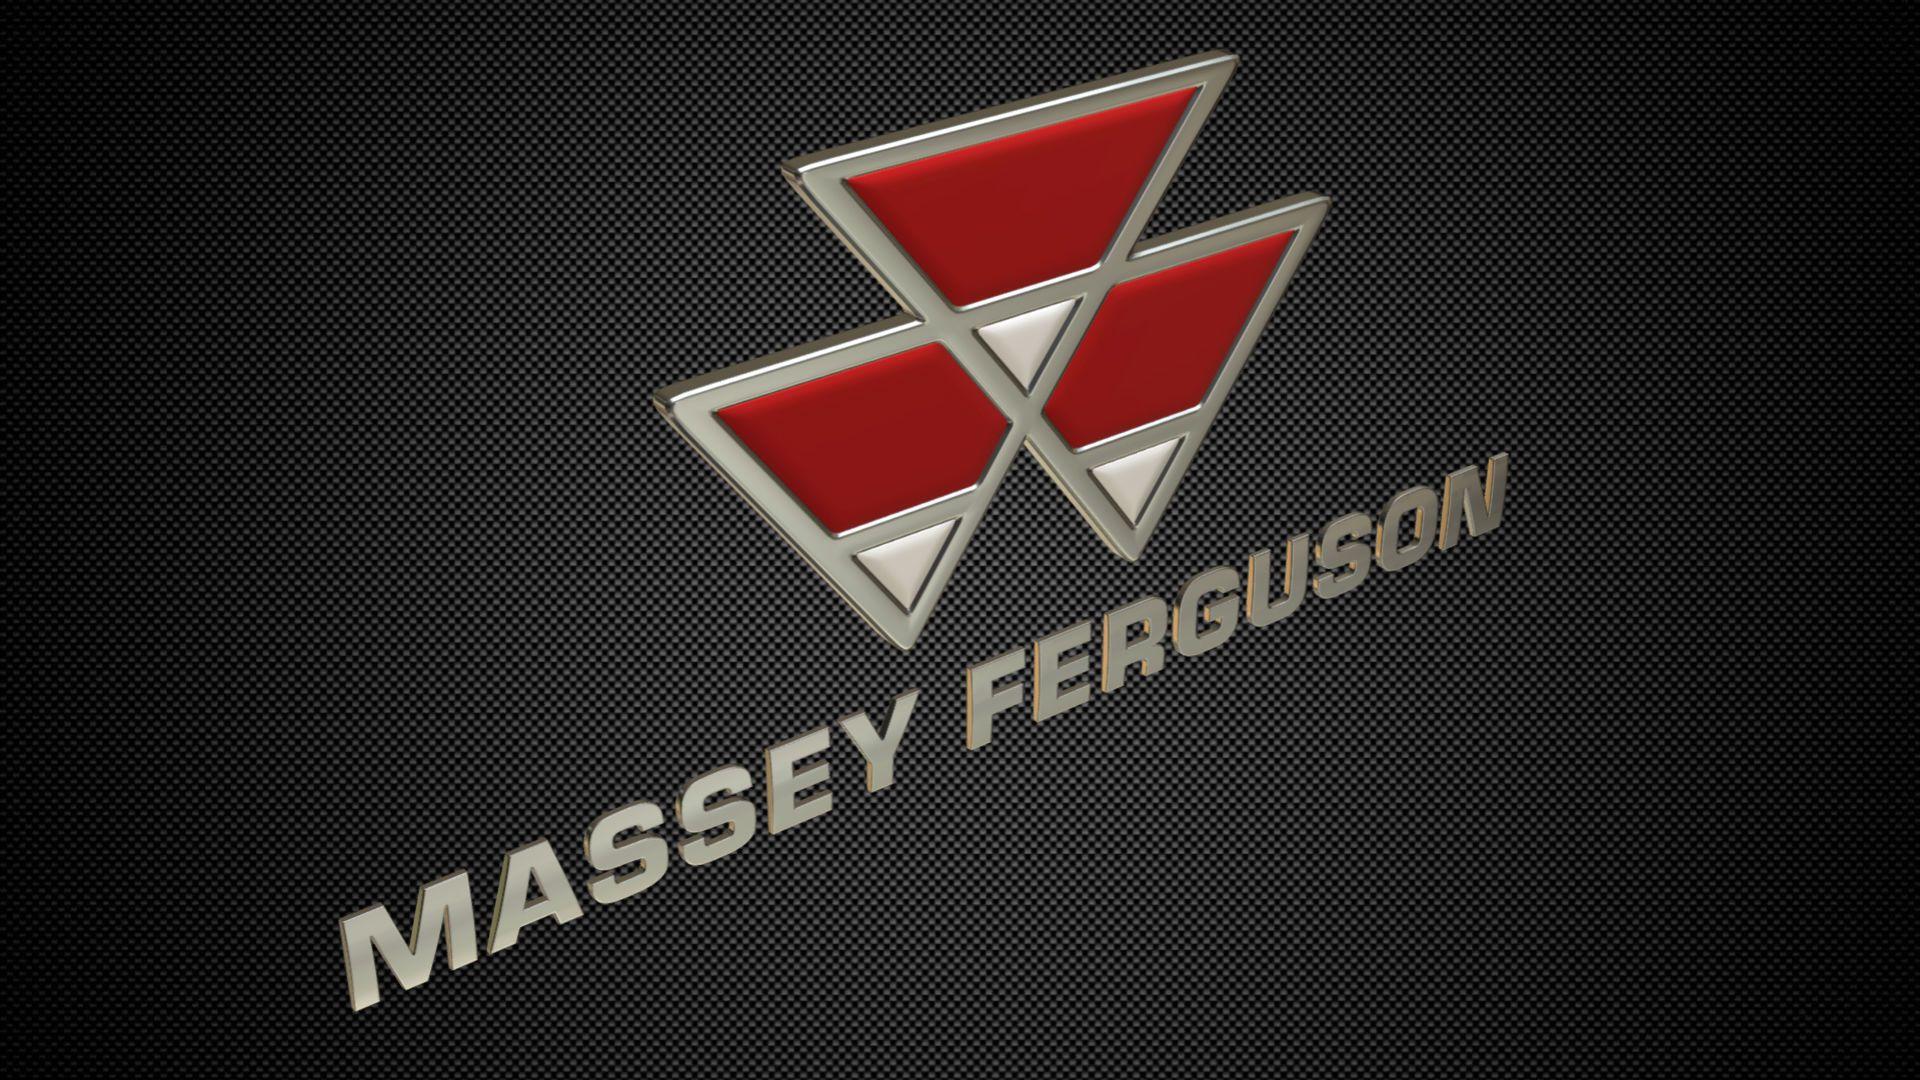 Massey Logo - 3D model massey ferguson logo